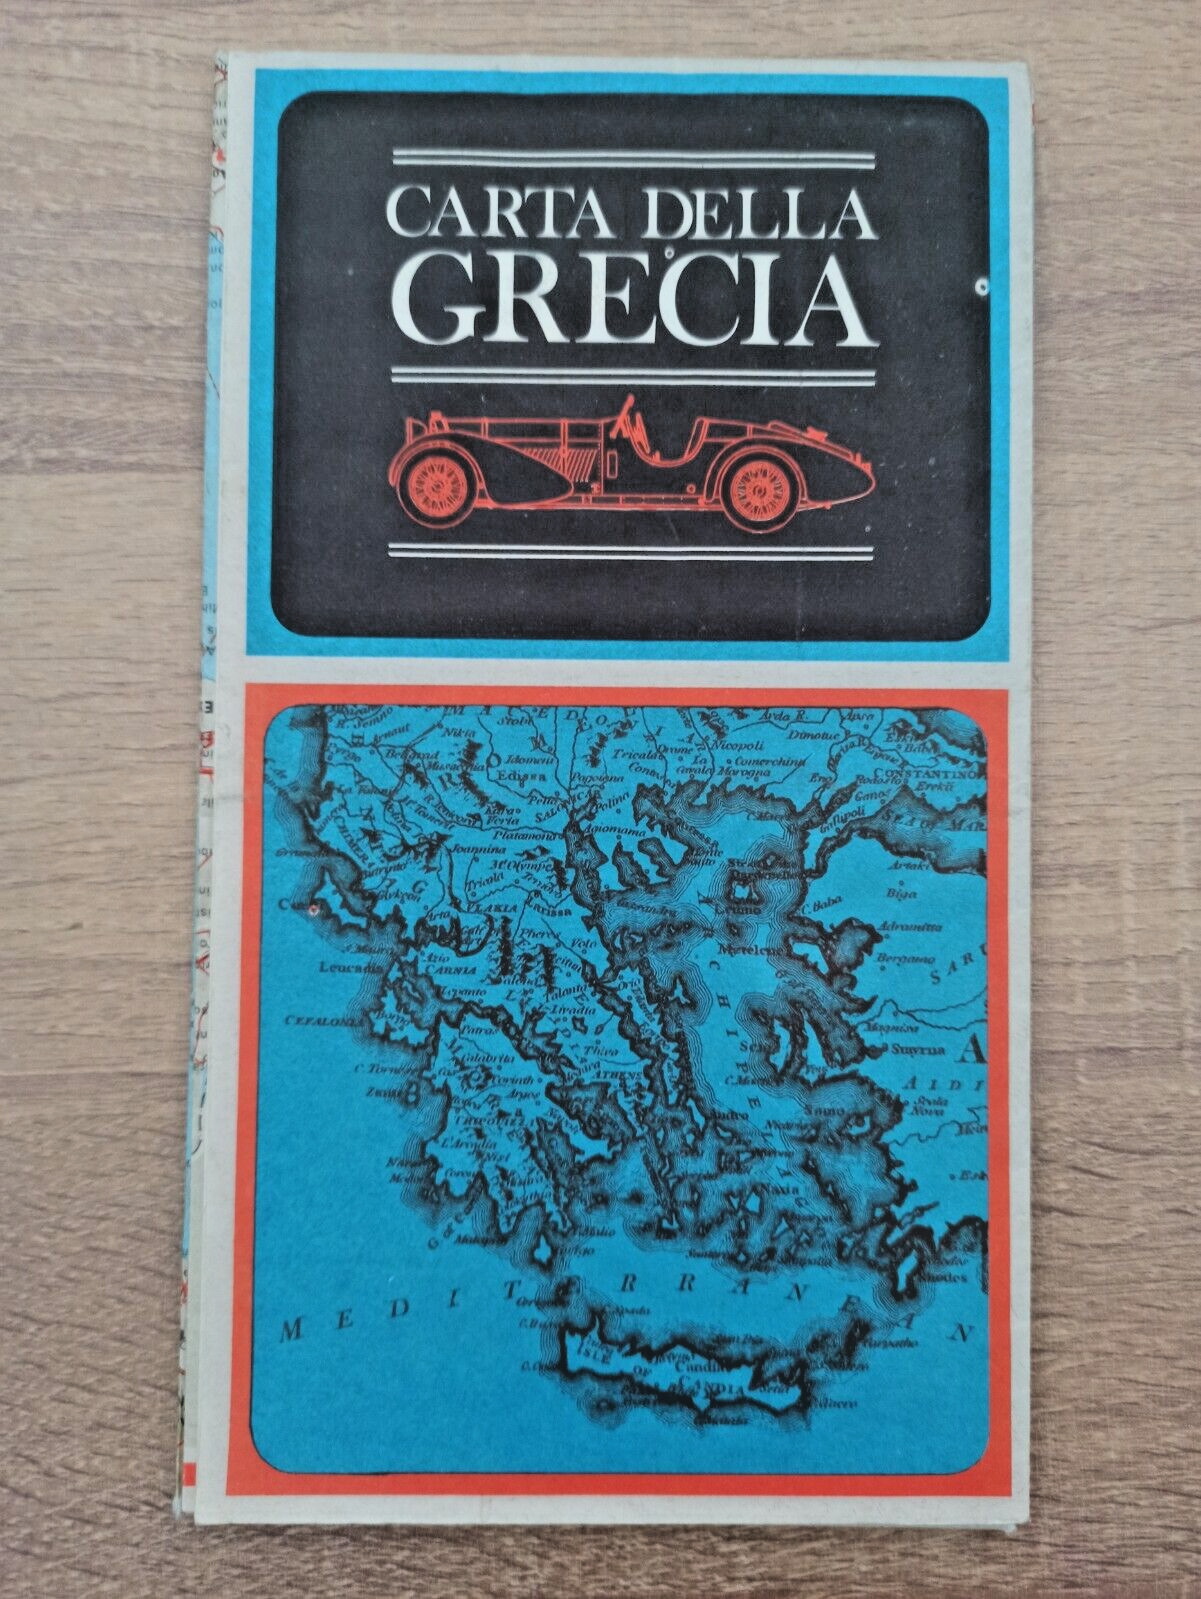 Vintage 1972 map of Greece Carta della Grecia, mint condition